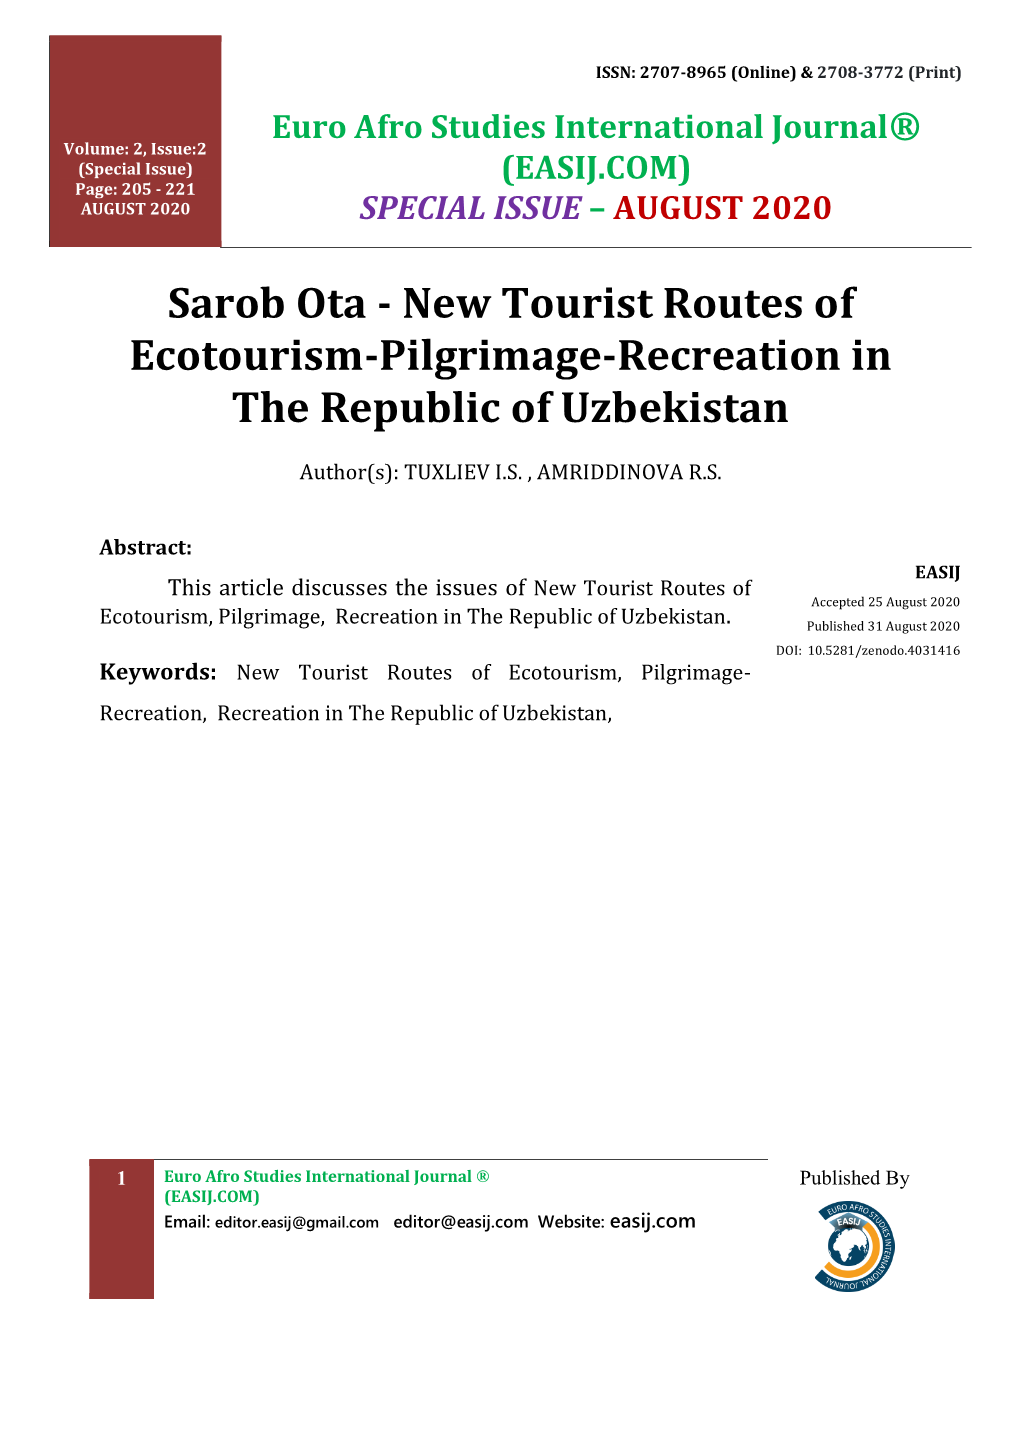 Sarob Ota - New Tourist Routes of Ecotourism-Pilgrimage-Recreation in the Republic of Uzbekistan